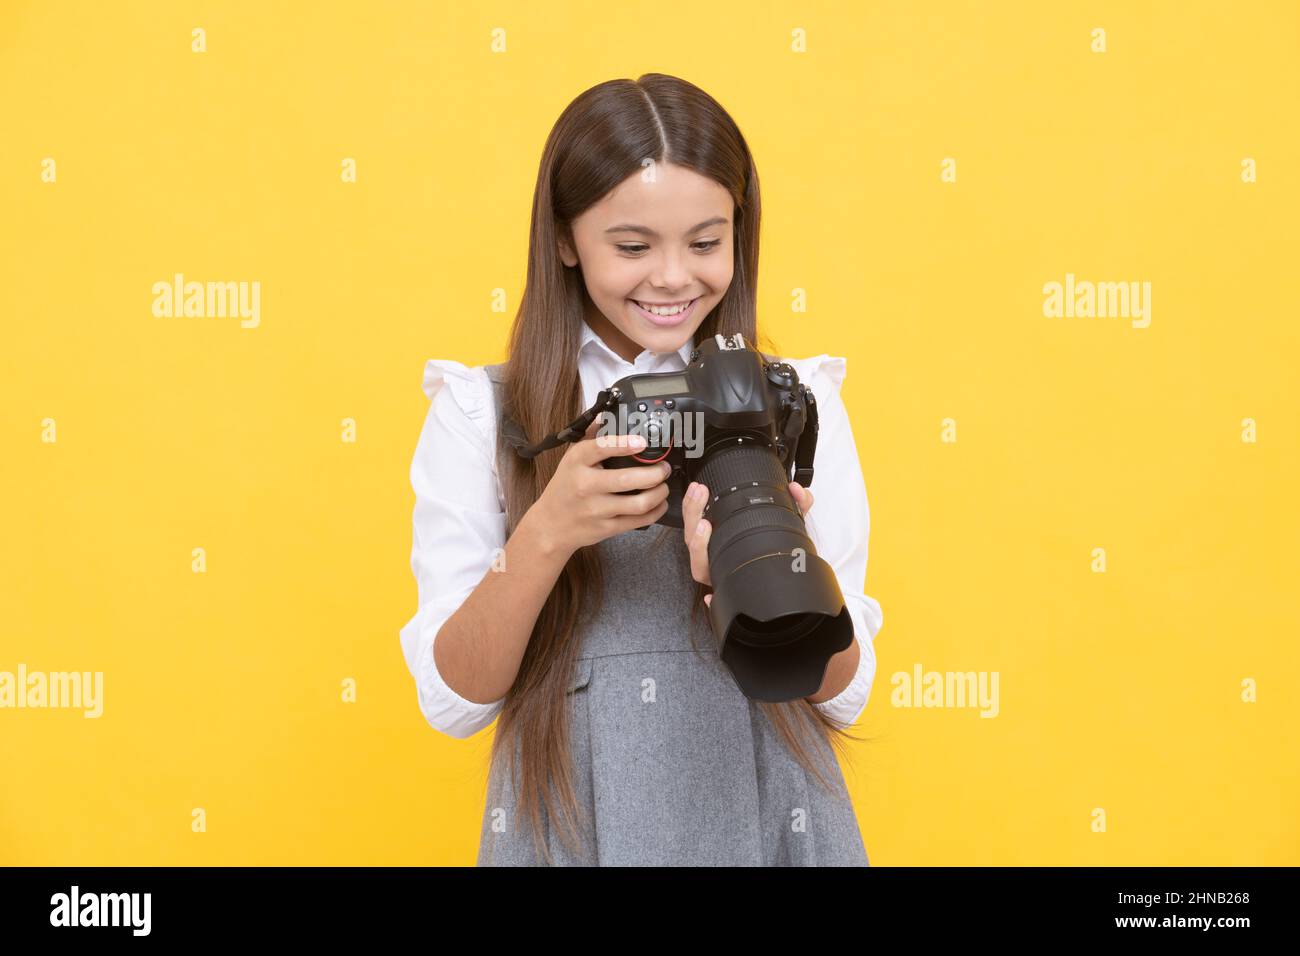 gai enfant fille prendre photo avec digicam, photographie Banque D'Images